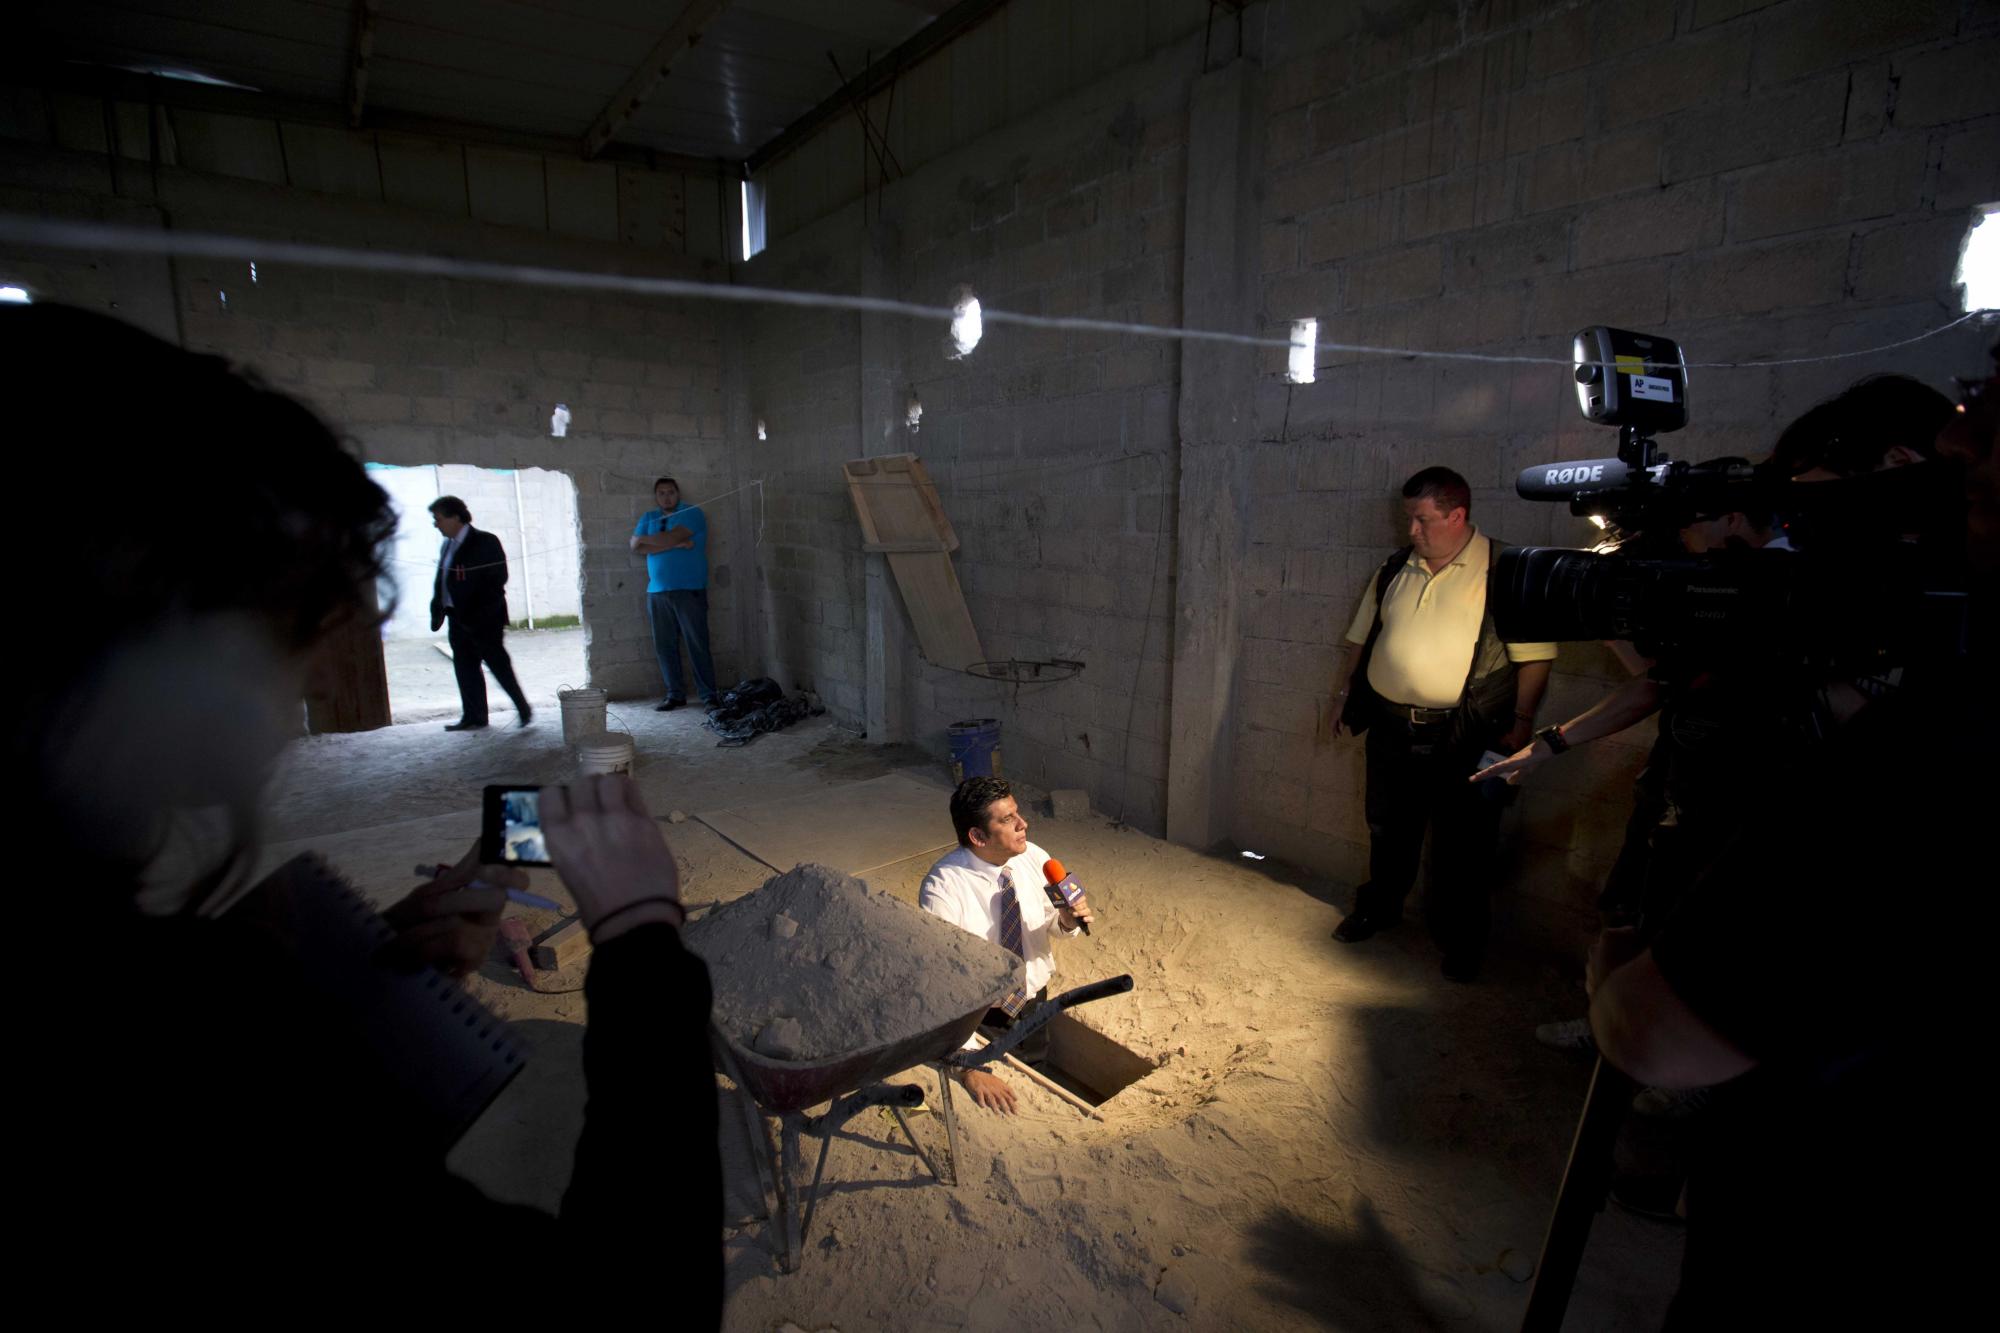 En esta imagen del martes 14 de julio de 2015, un periodista informa desde la salida del túnel por el que, según las autoridades, escapó el capo de la droga Joaquín El Chapo Guzmán de la prisión de máxima seguridad de Altiplano, en Almoloya, al oeste de la ciudad de México.